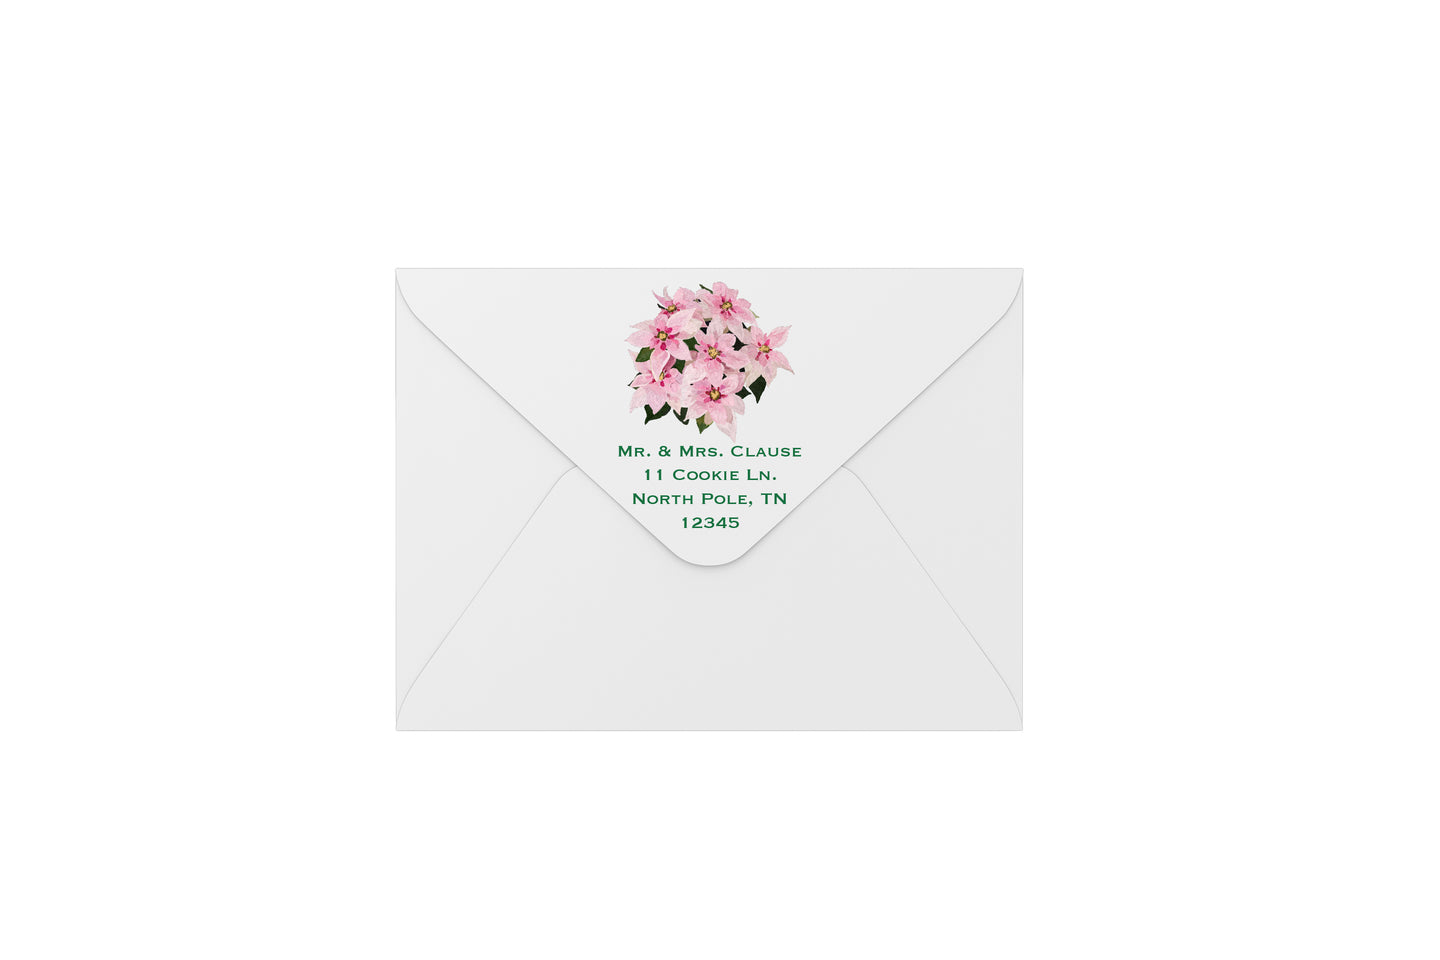 poinsettia envelopes - address printing